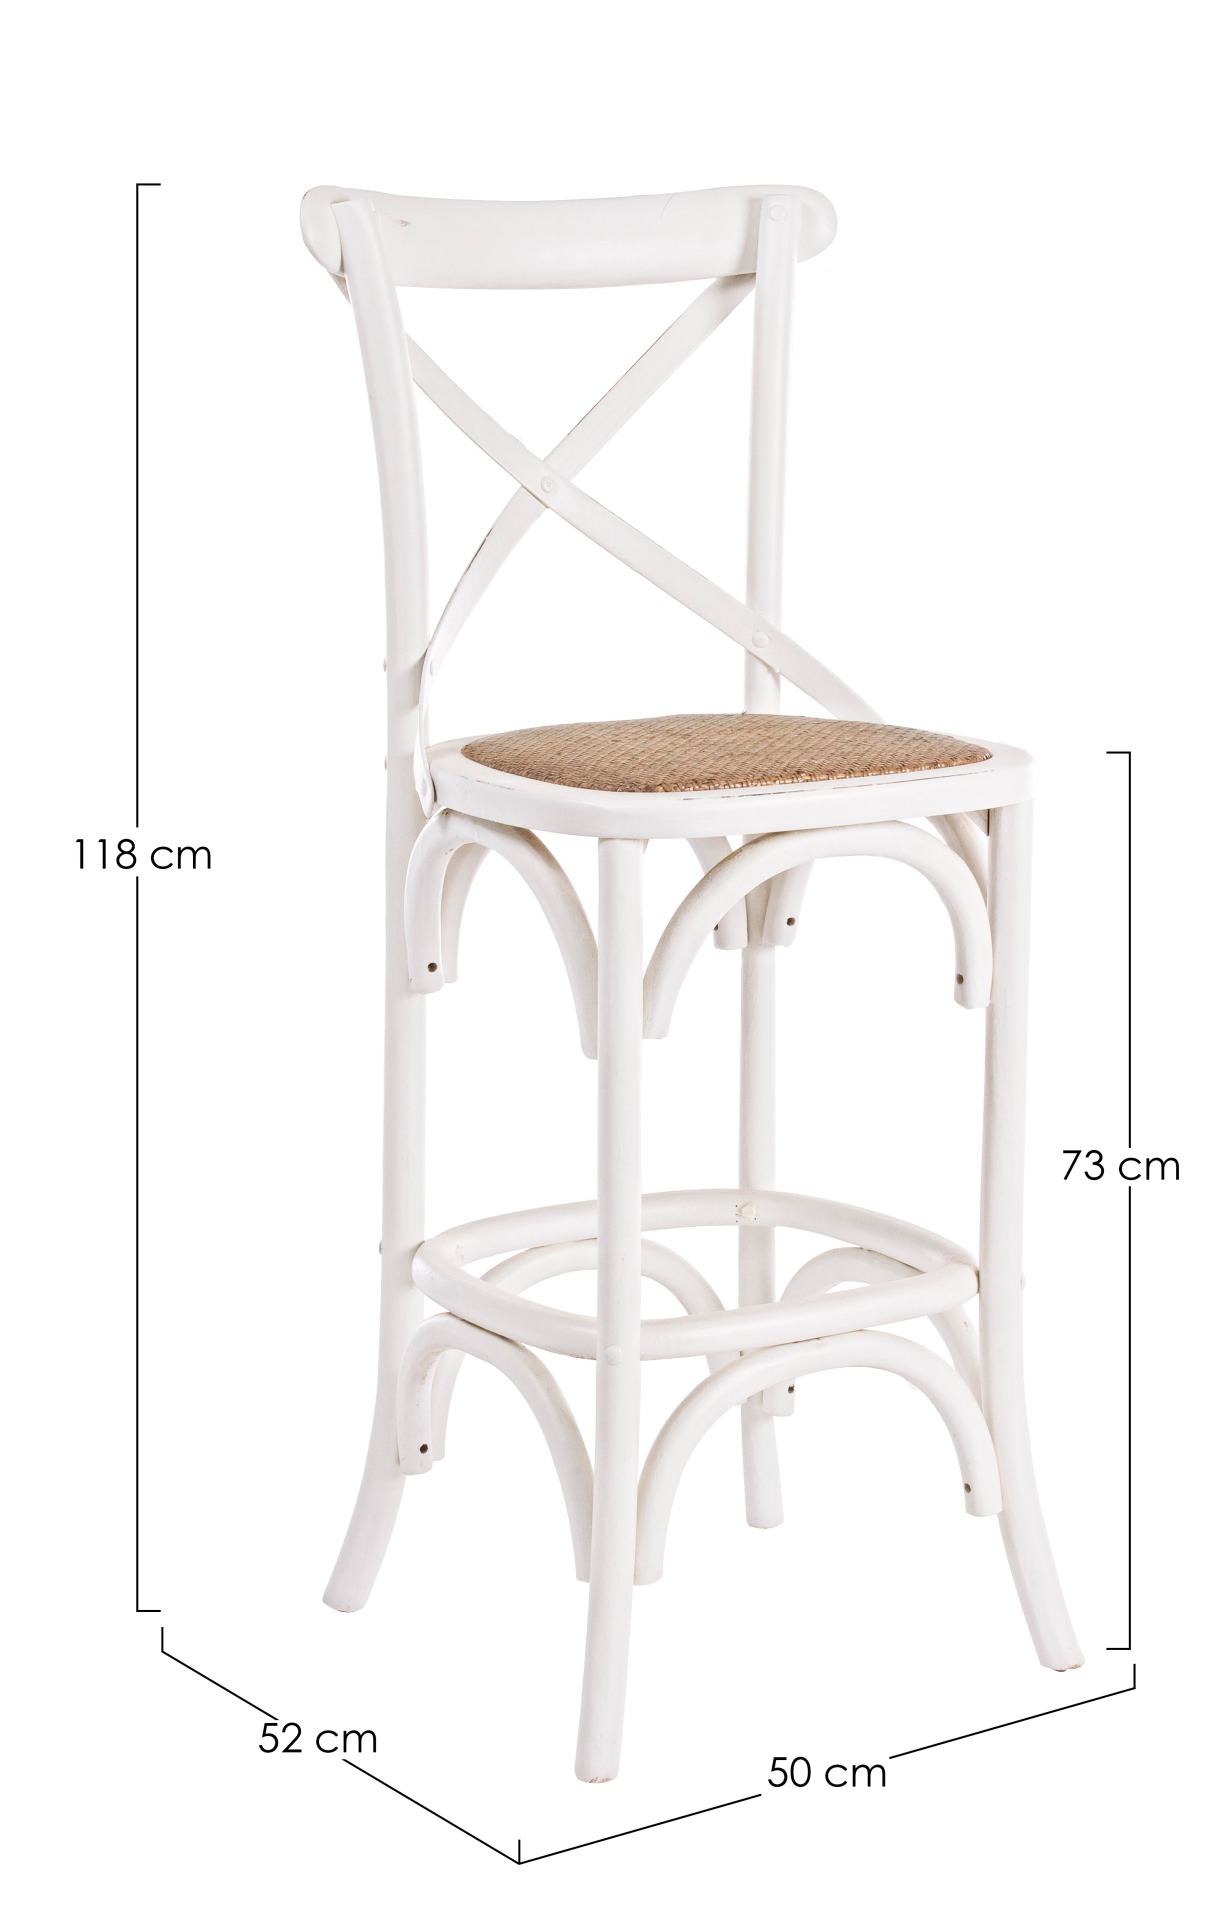 Der Barhocker Cross überzeugt mit seinem klassischen Design. Gefertigt wurde er aus Ulmenholz, welches einen weißen Farbton besitzt. Die Sitzfläche ist aus natürlichem Ratten Geflecht. Die Sitzhöhe des Hockers beträgt 73 cm.